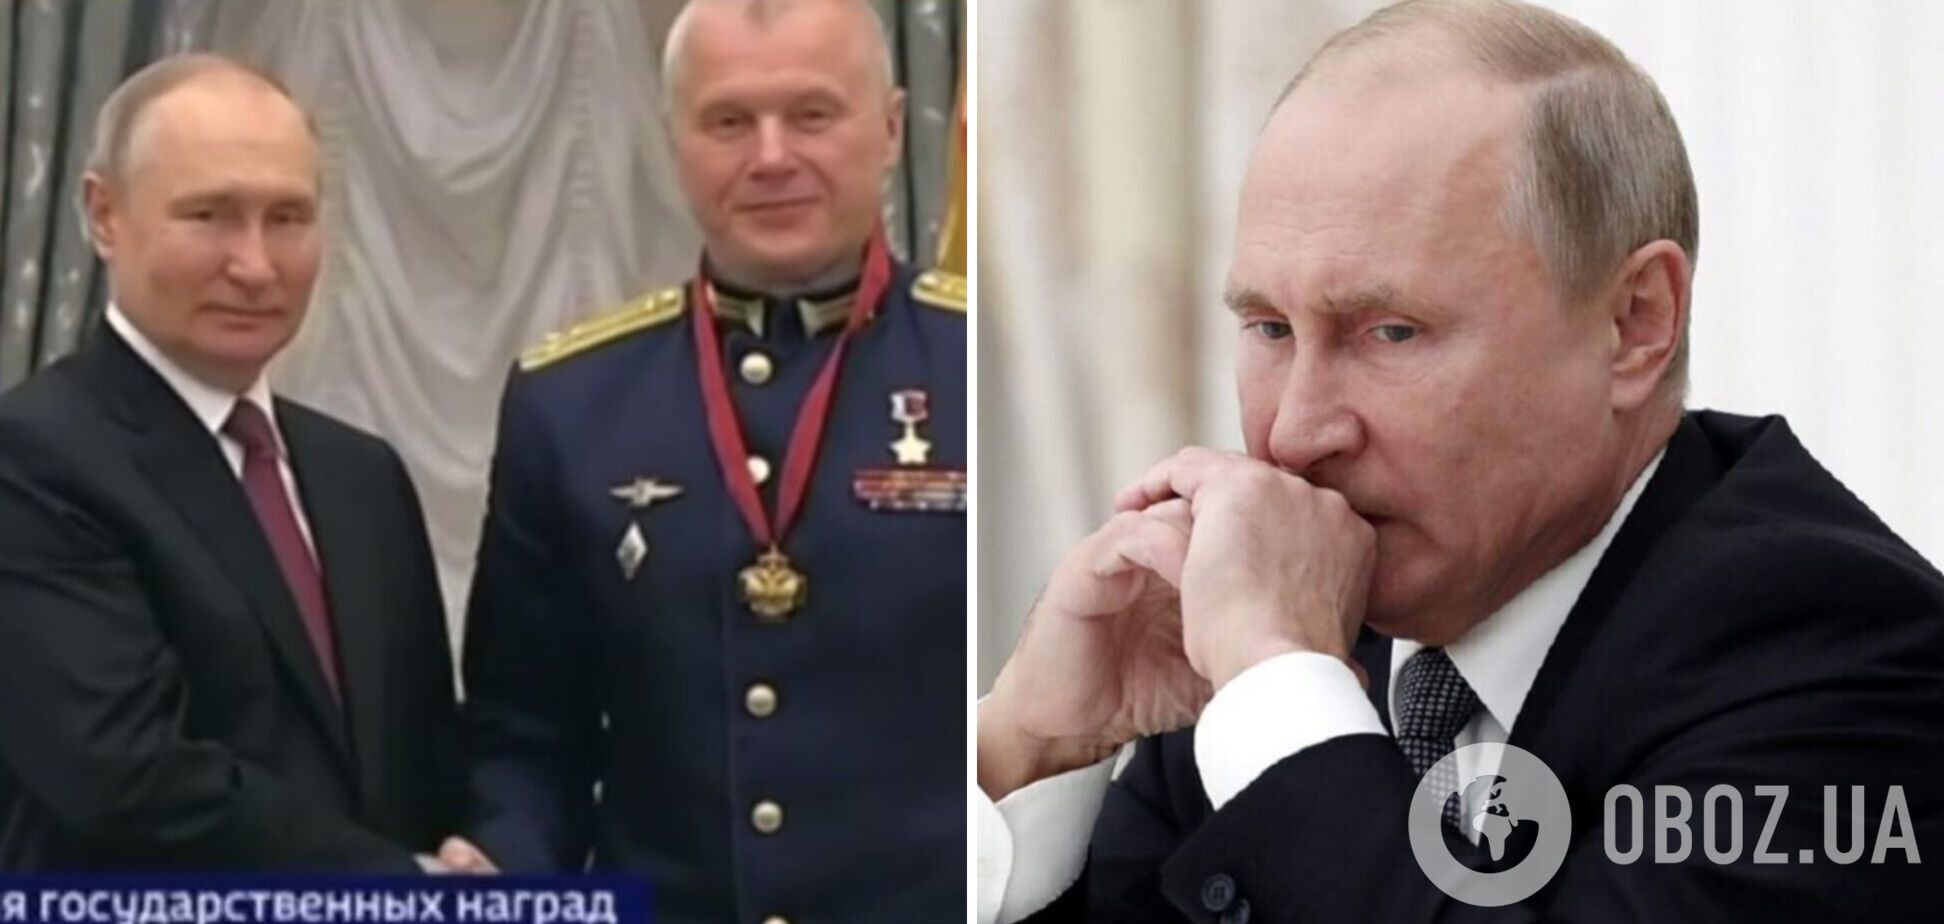 'Хтось усерйоз думає, що він може використати ядерну зброю?' Космонавт видав страх Путіна, у мережі шквал коментарів. Відео